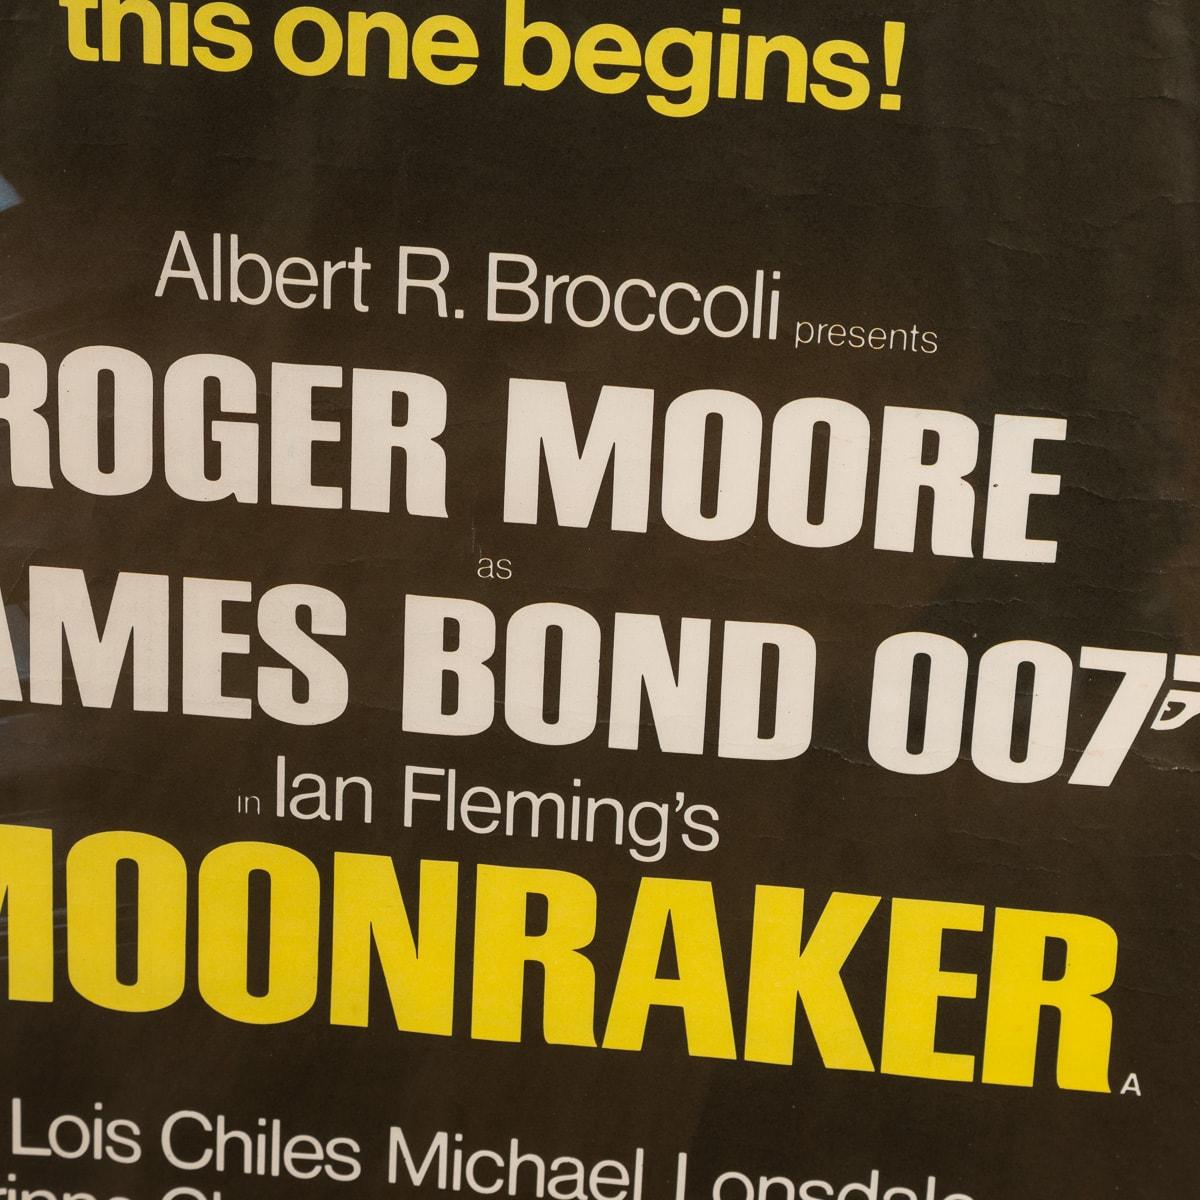 20th Century Original James Bond 007 'Moonraker' British Quad Film Poster, c.1979 For Sale